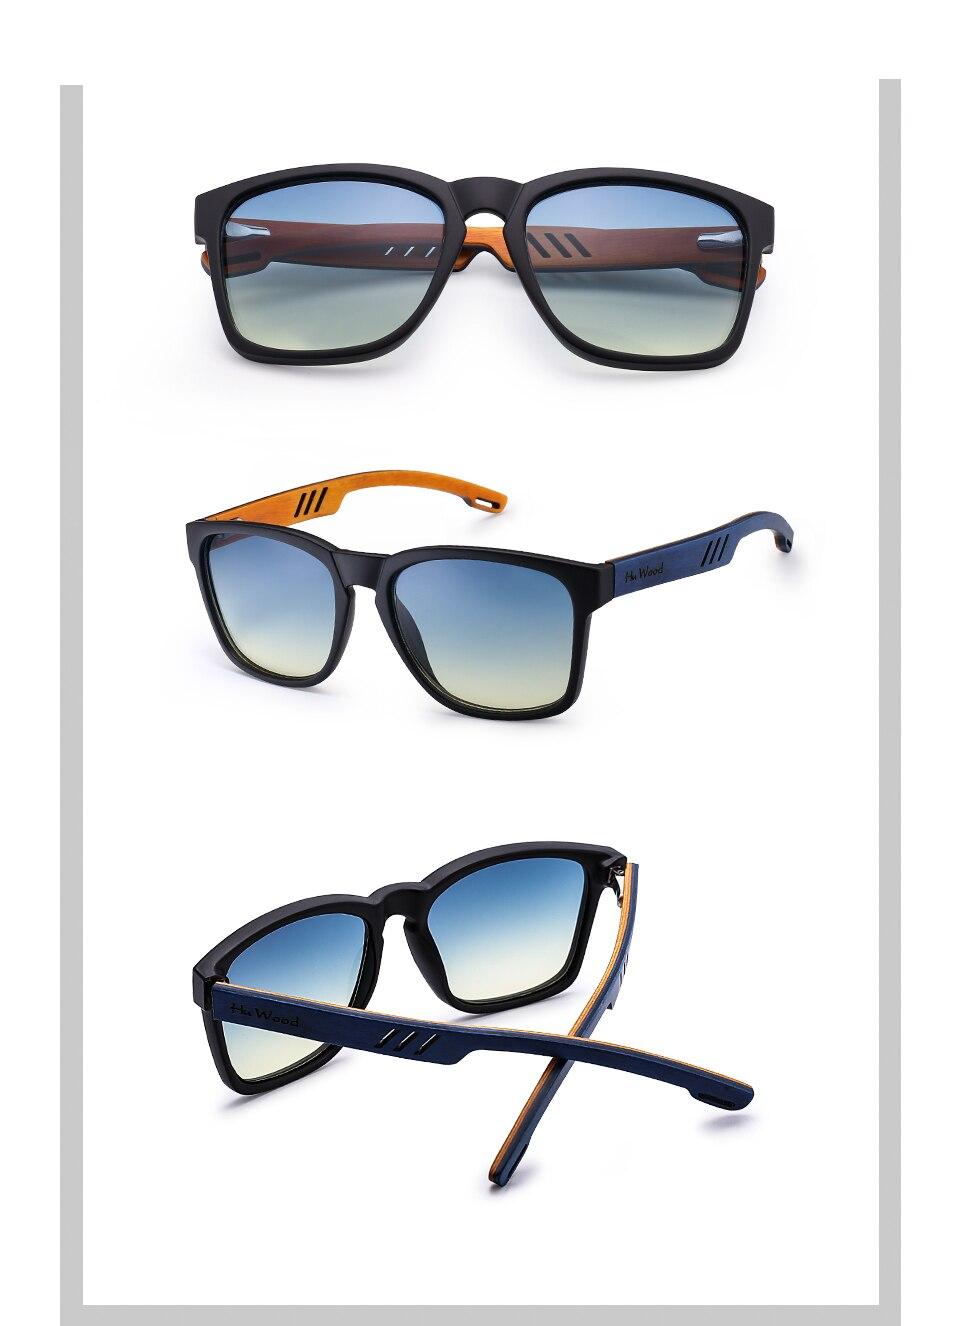 HU drewna marka projekt okulary polaryzacyjne Skateboard drewniane okulary przeciwsłoneczne dla mężczyzn kobiety soczewki jazdy gafas de sol mujer GR8011